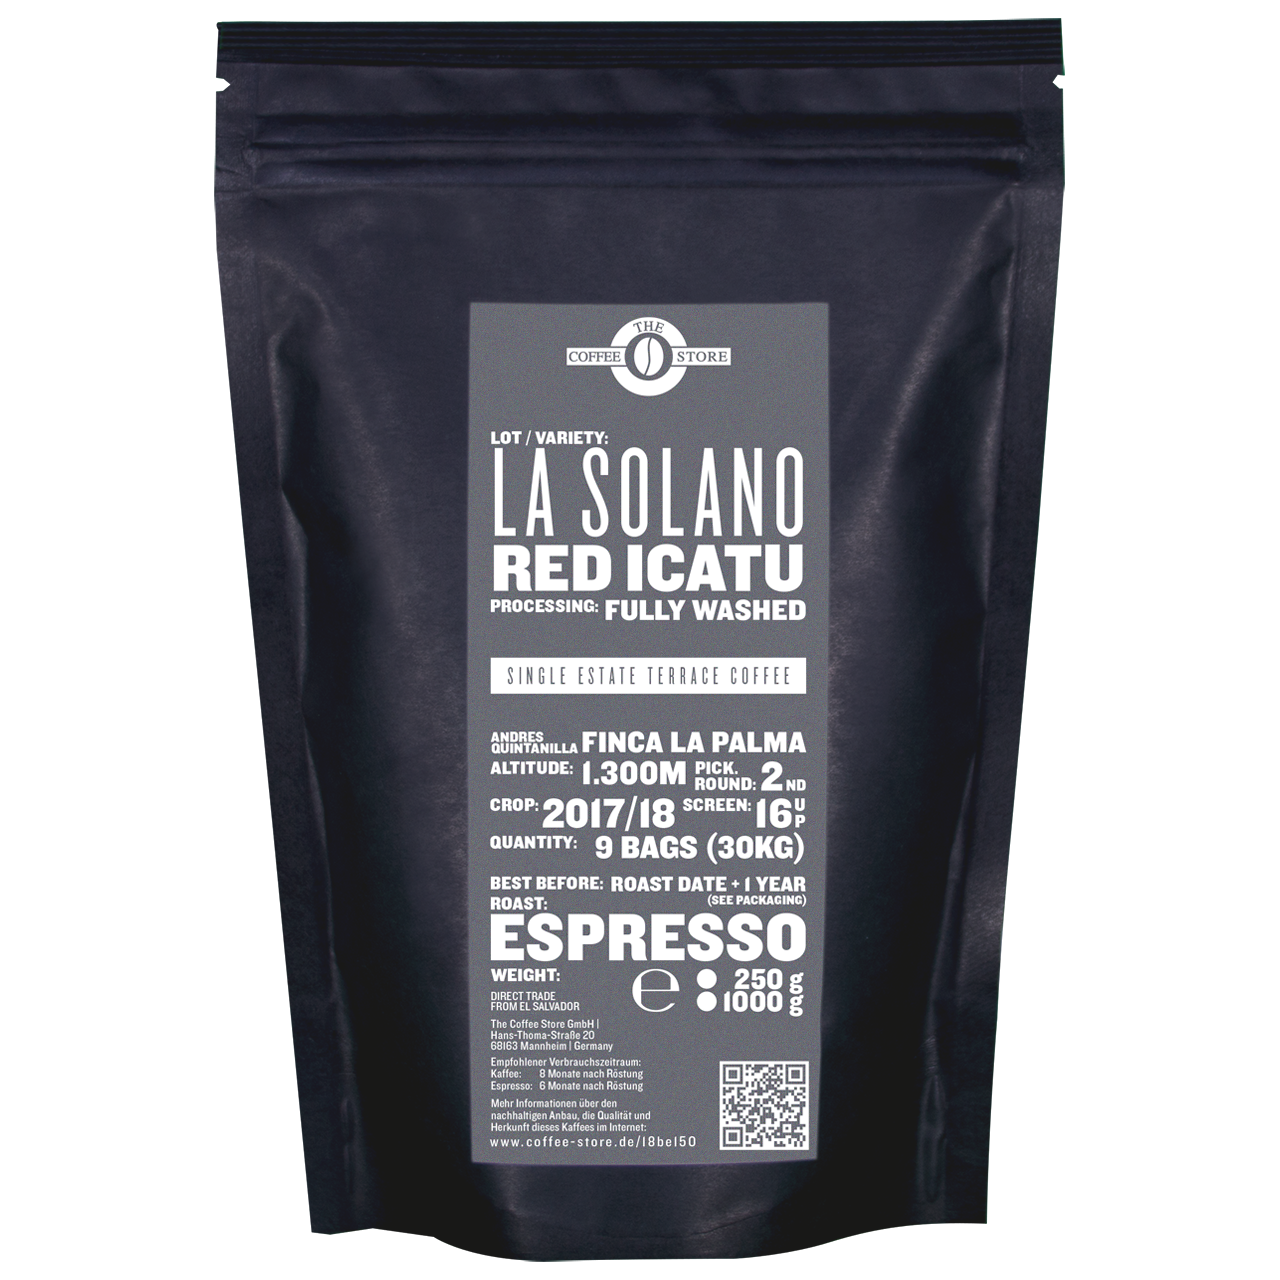 La Solano, Red Icatu - Espressoröstung